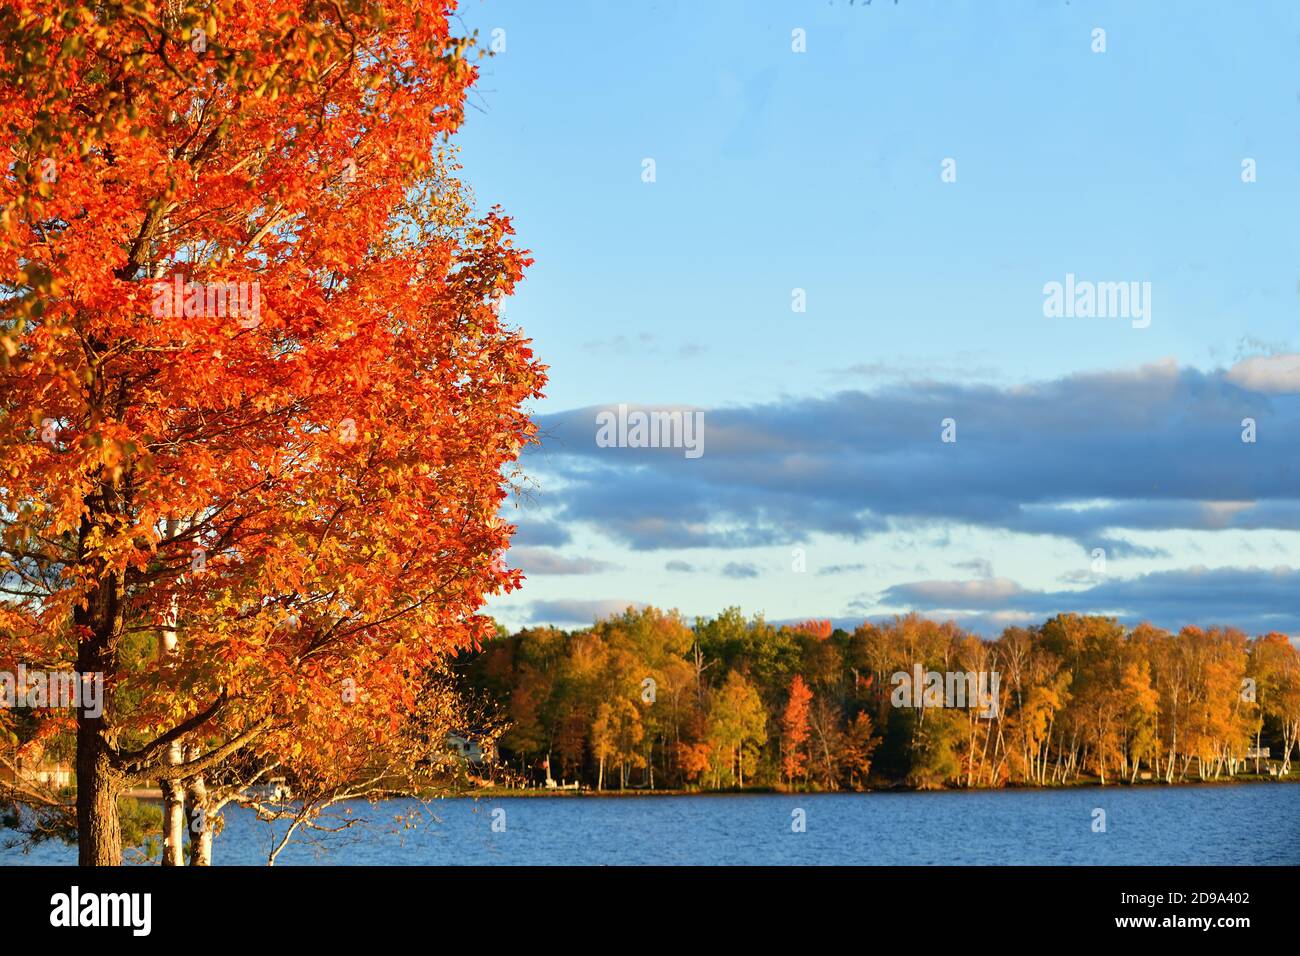 Trout Lake, Michigan, Stati Uniti. Autunno e il sole nel tardo pomeriggio scende sugli alberi lungo una costa al lago Trout nella penisola superiore del Michigan. Foto Stock